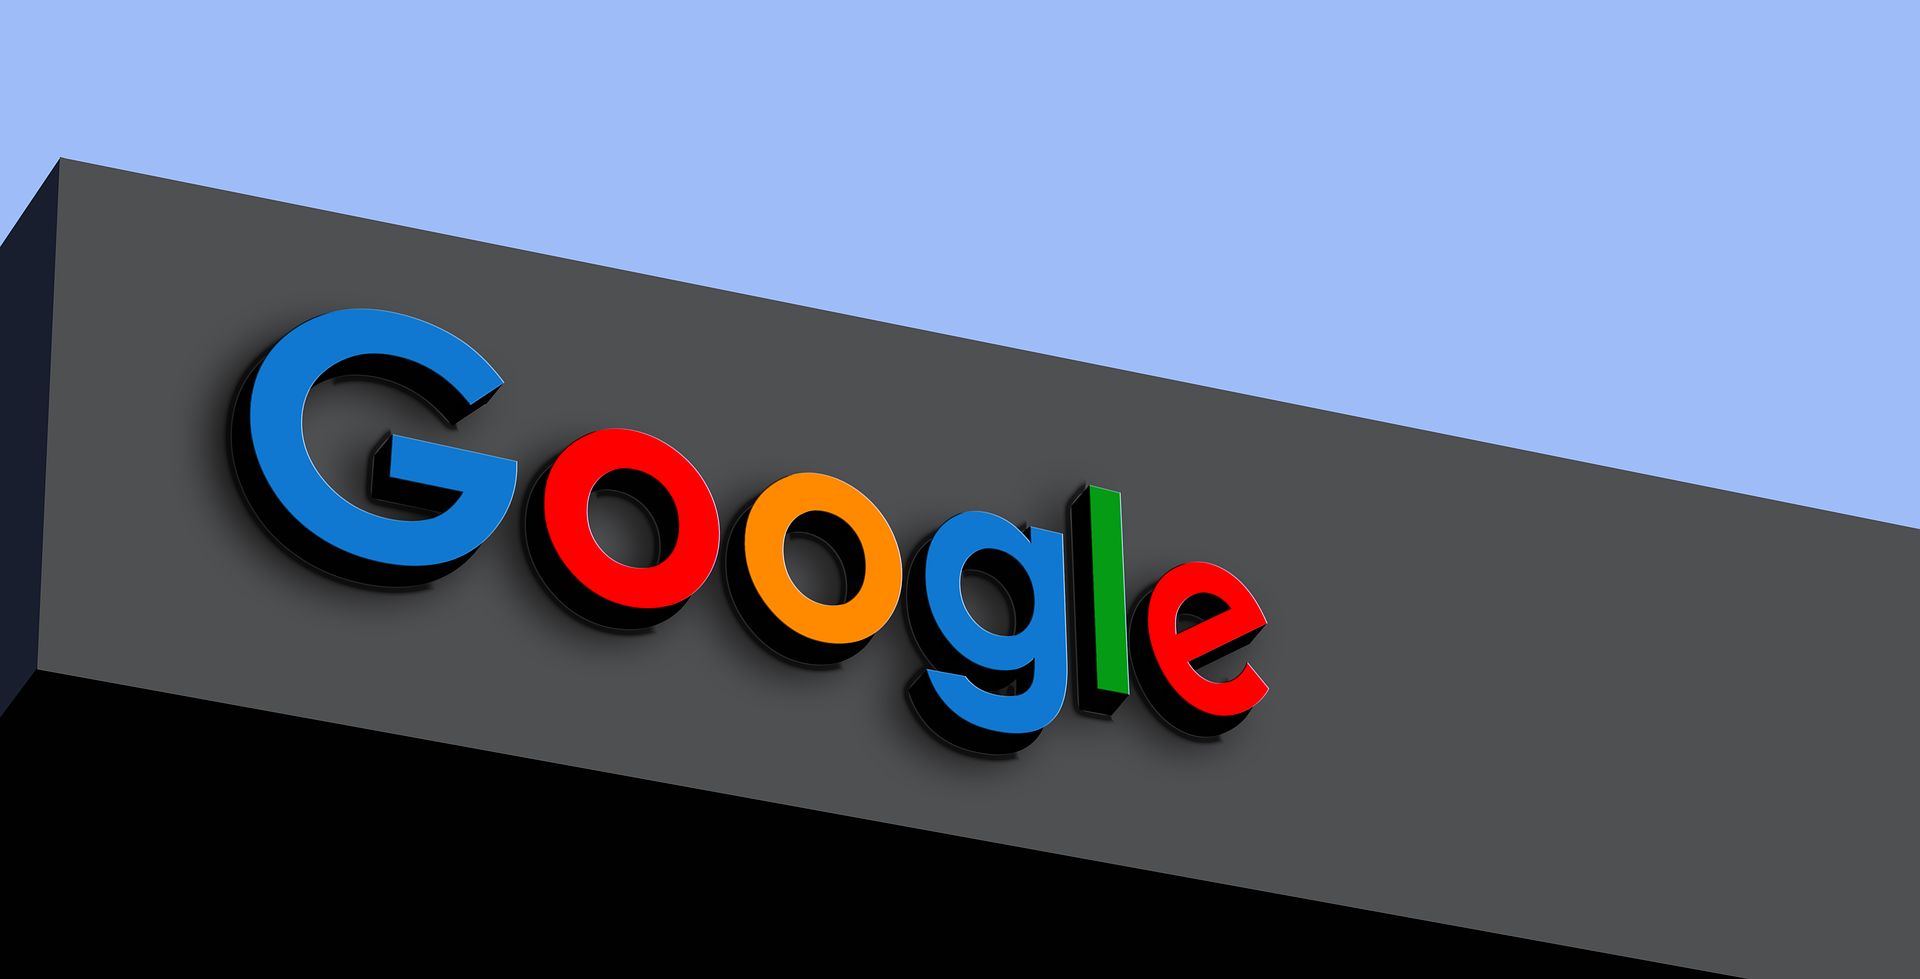 google aktualizuje gemini 1.5 pro. co doda do swojego modelu ai?